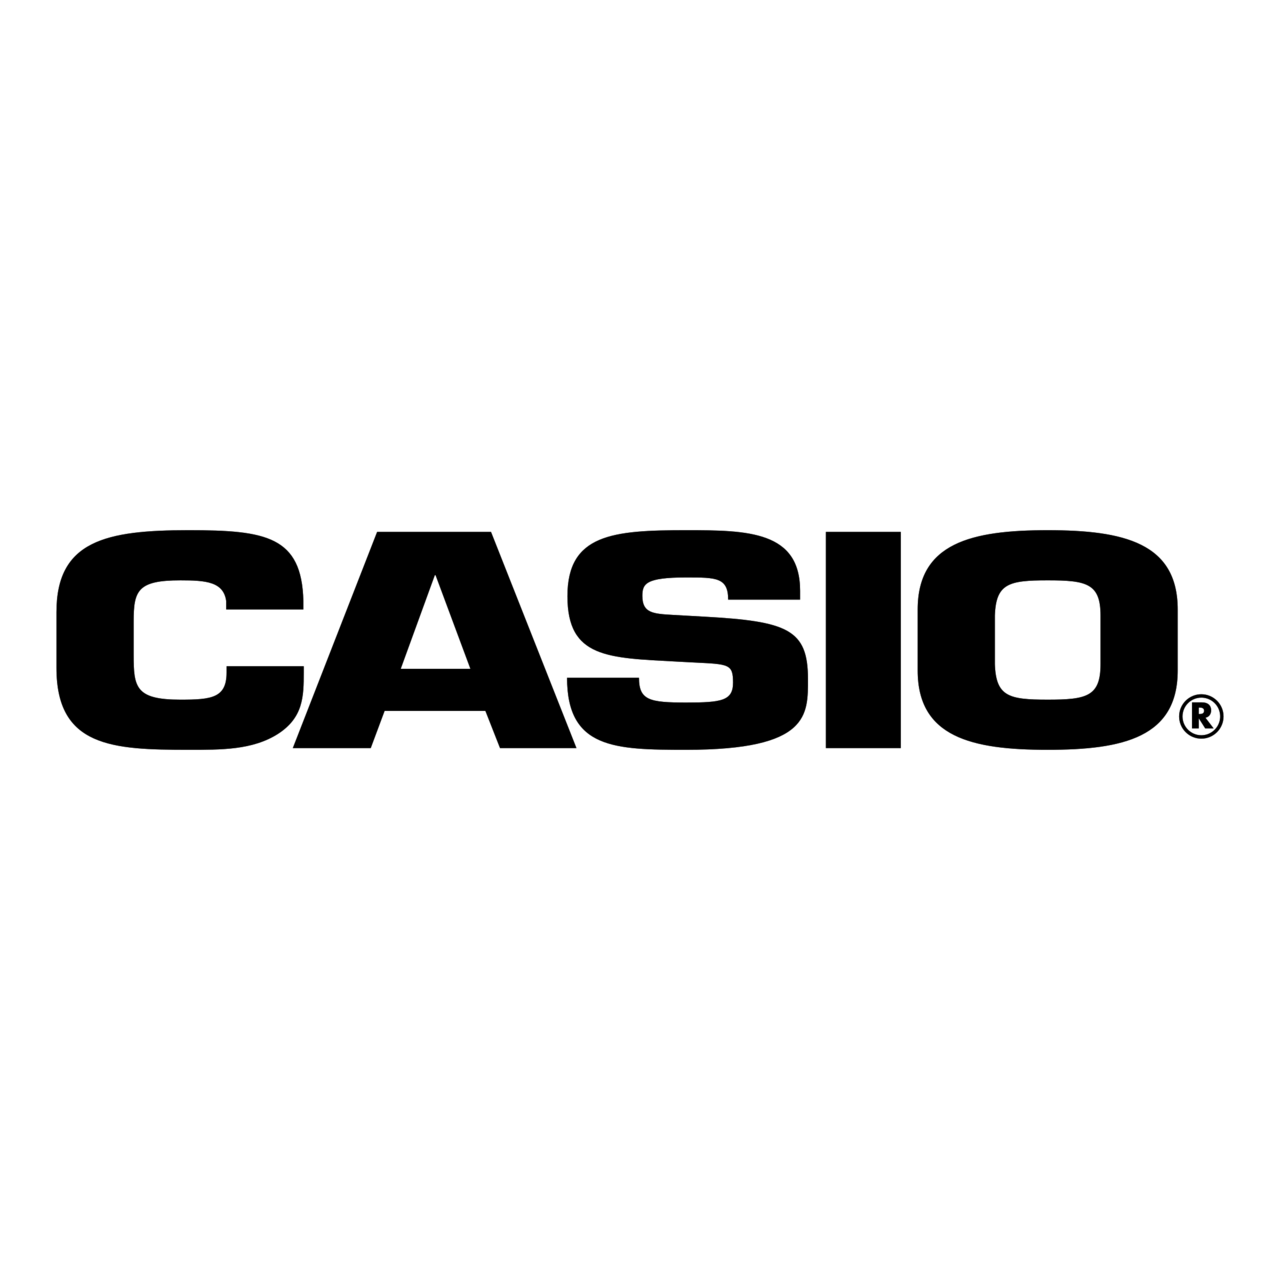 casio-logo-black-and-white-1